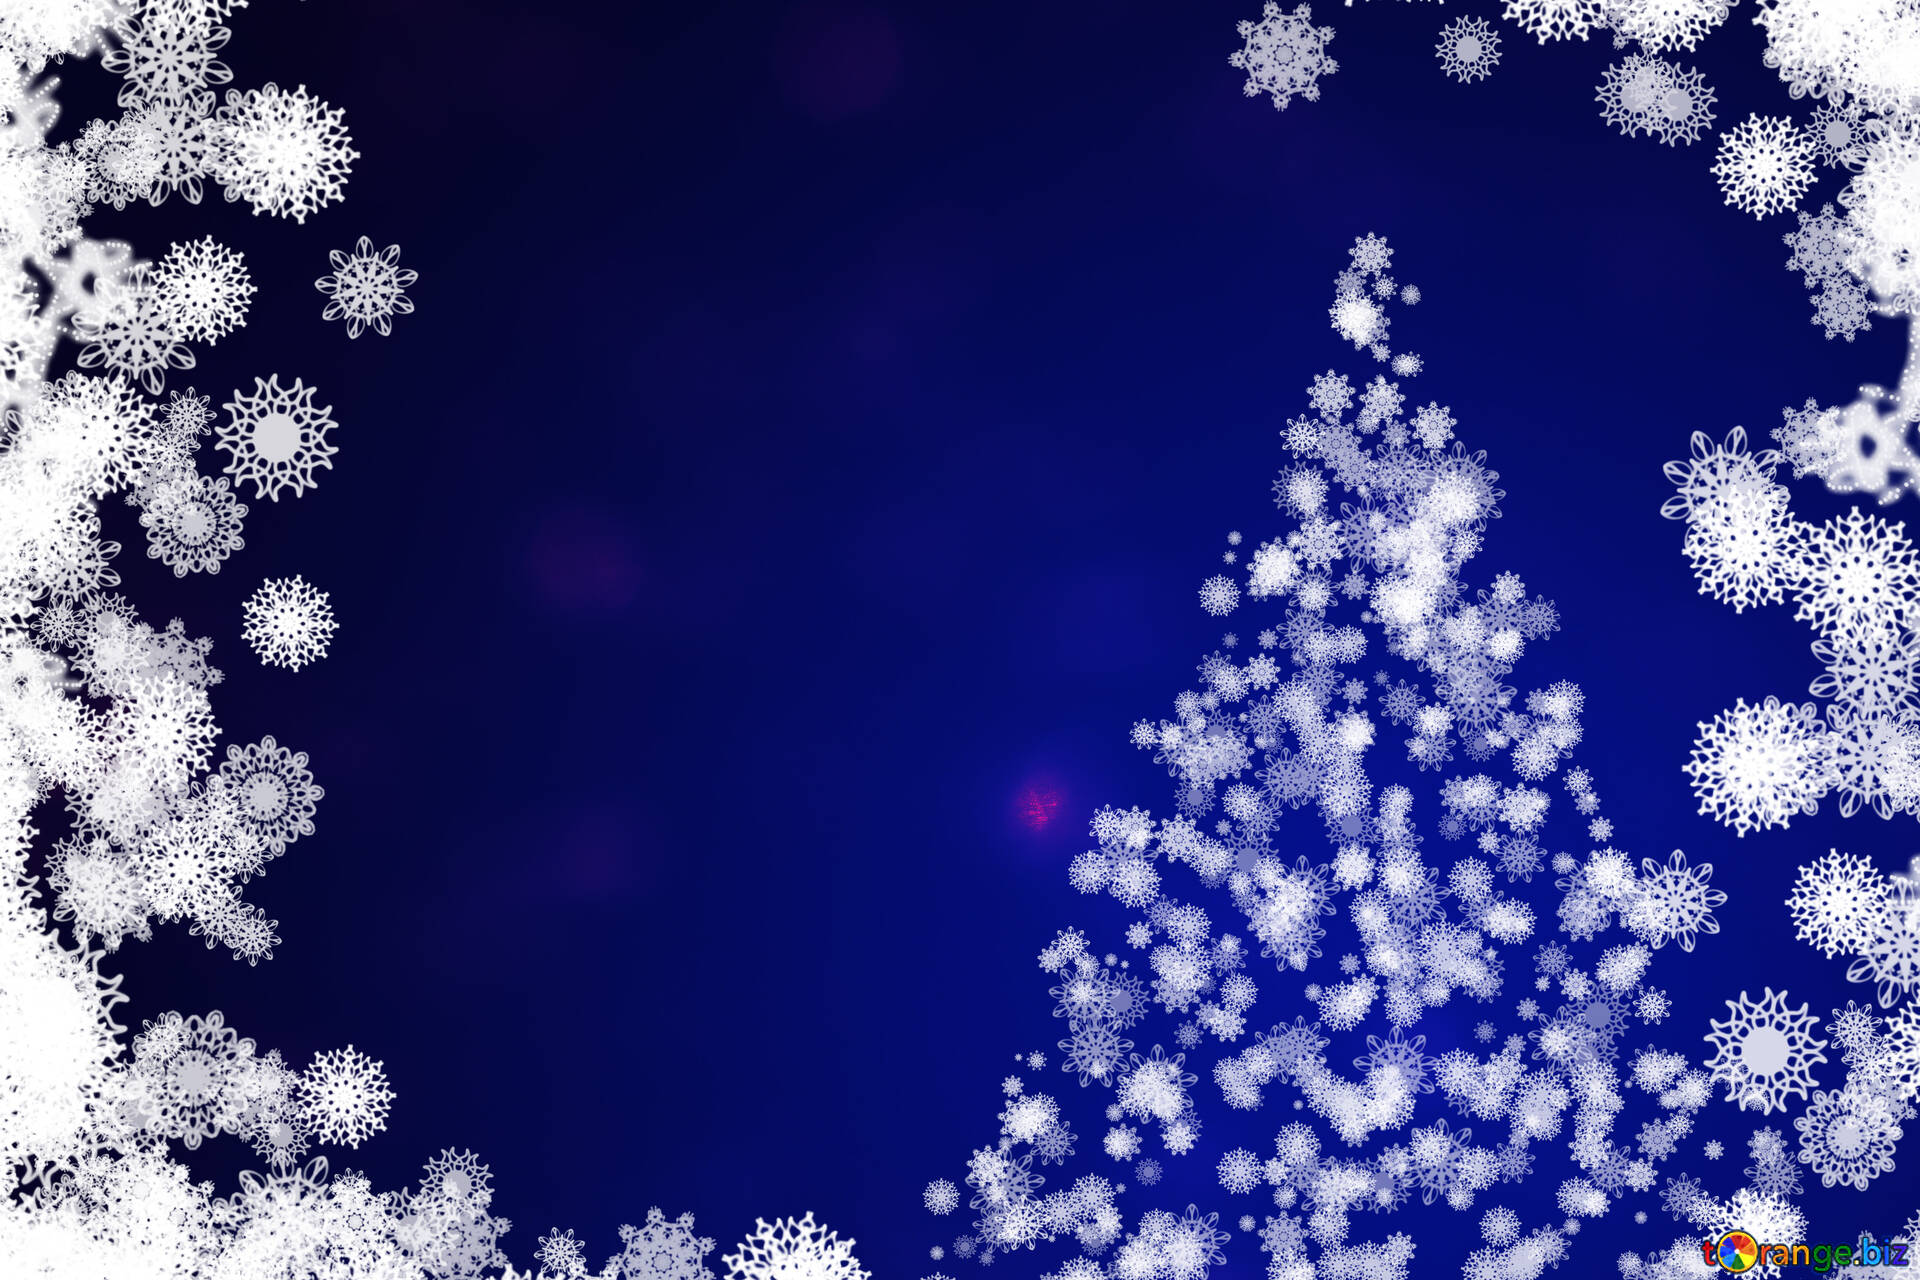 クリスマスツリーの写真 無料の写真 雪の結晶の背景クリップアート クリスマス ツリー 無料の写真 クリップアート Torange Biz